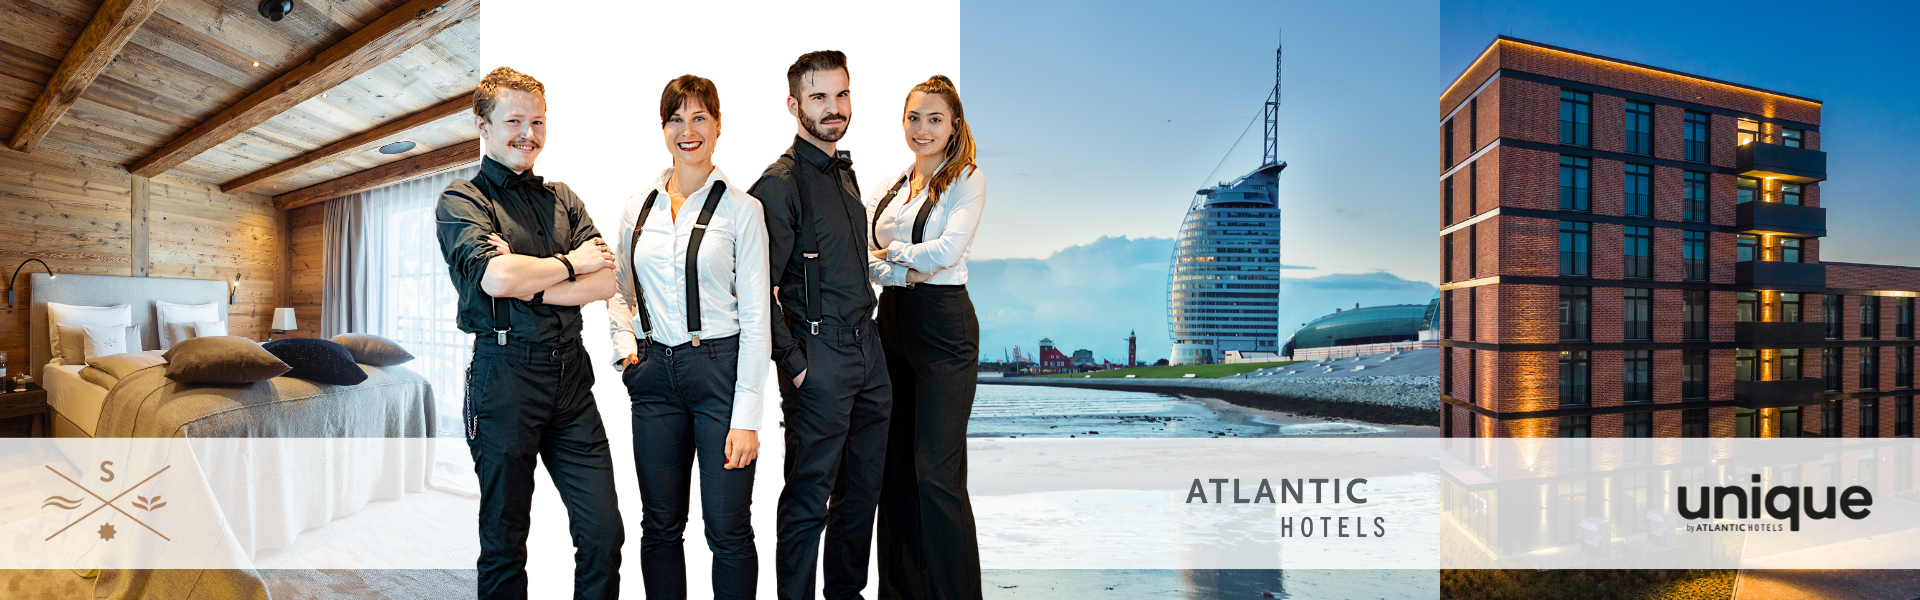 Außenansicht der Atlantic Hotels Sail City Bremerhaven und Atlantic Hotel unique Bremen mit Angestellten.